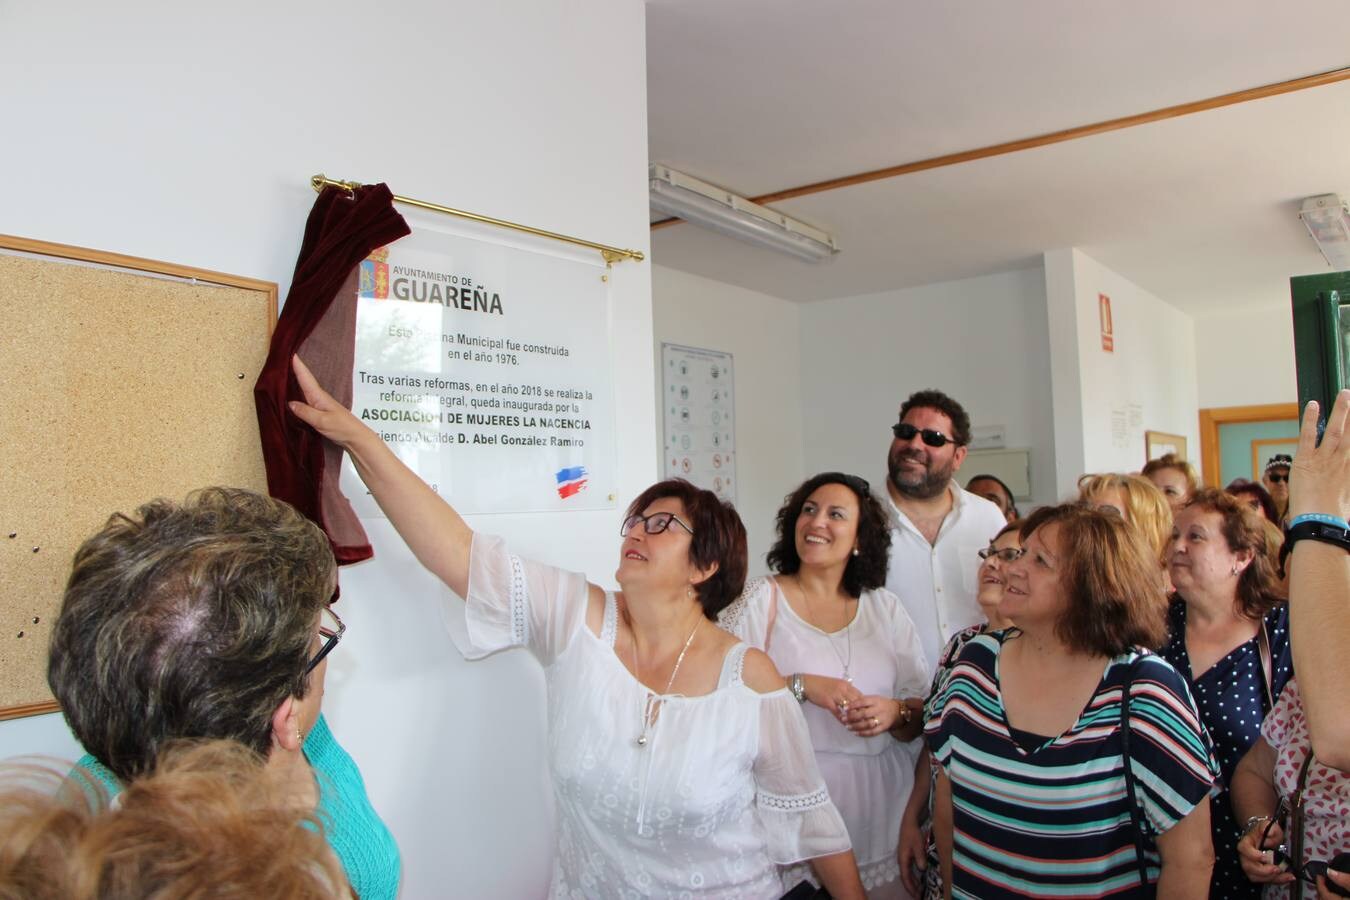 La presidenta de la asociación de mujeres, Remedios Merino, descubre la placa, inaugurándose la reforma y el inicio de la campaña de verano 2018 en la piscina municipal.